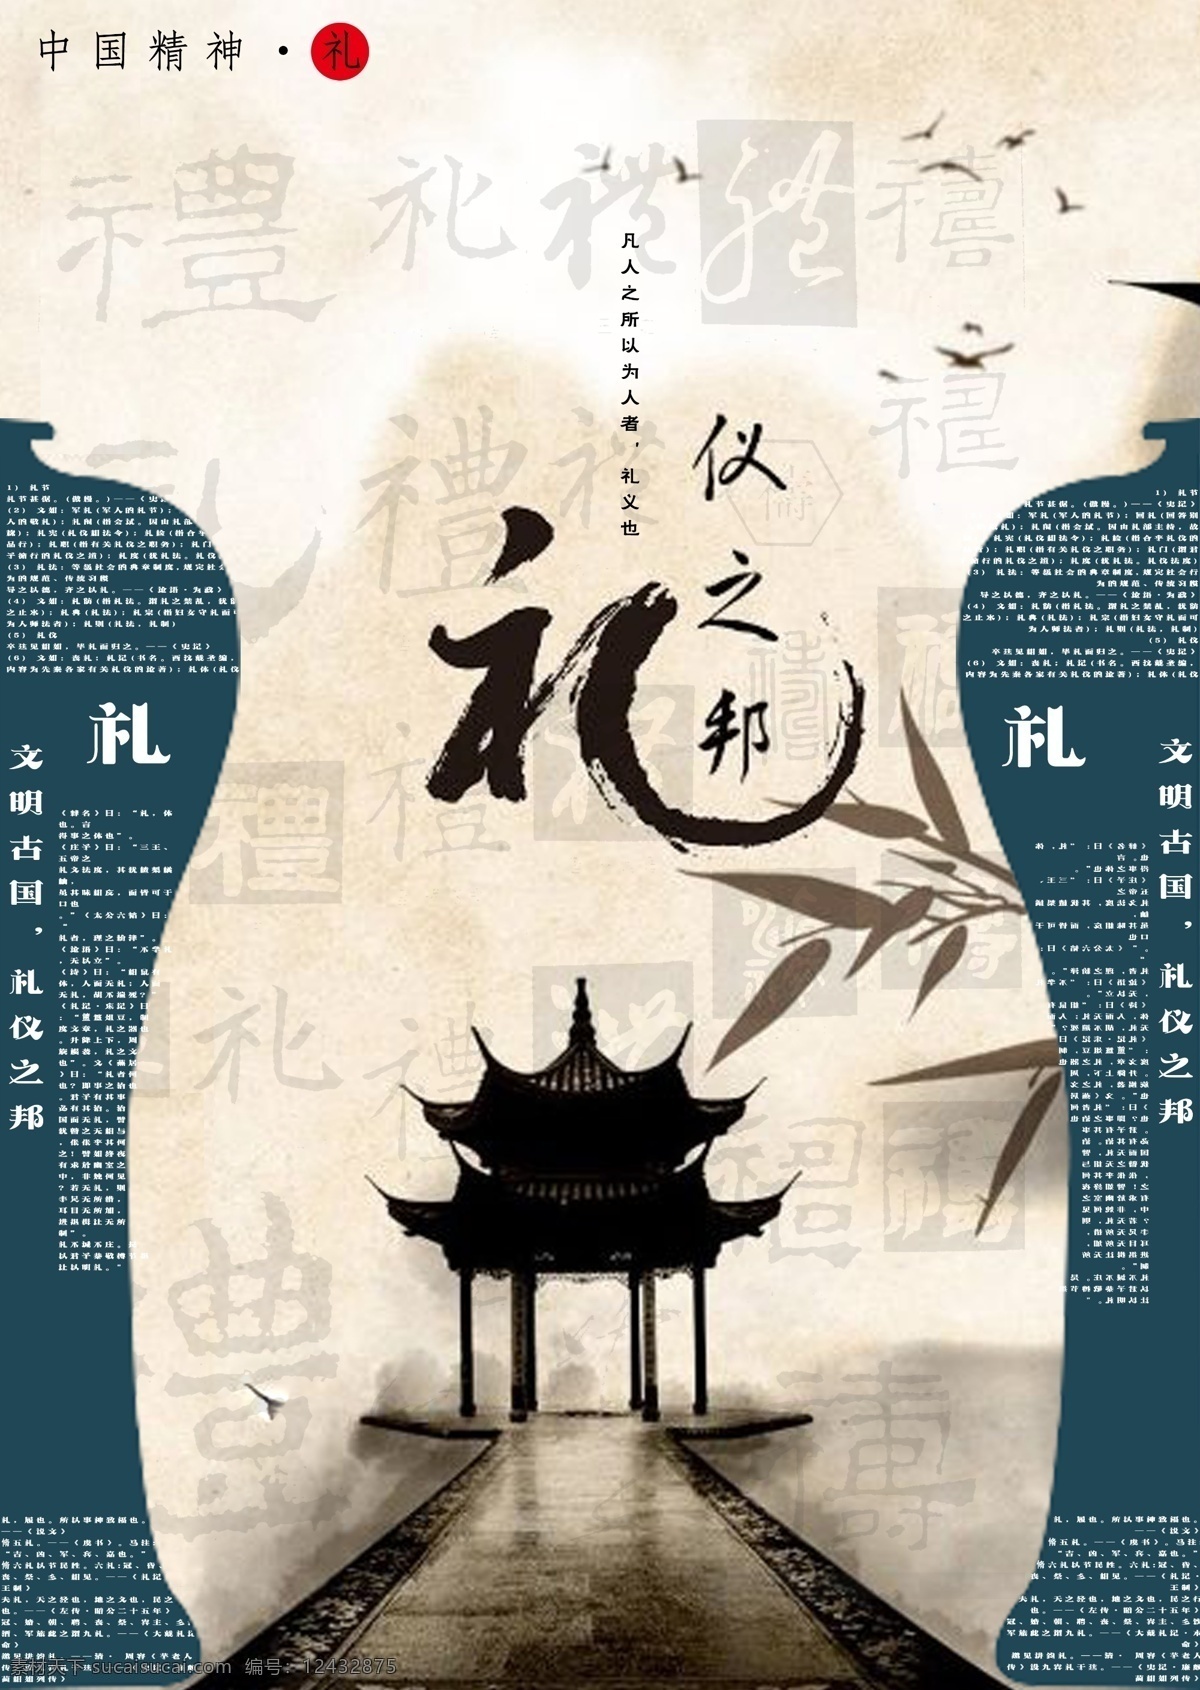 中国 精神 礼 海报 中国精神 瓷器花瓶 礼仪之邦